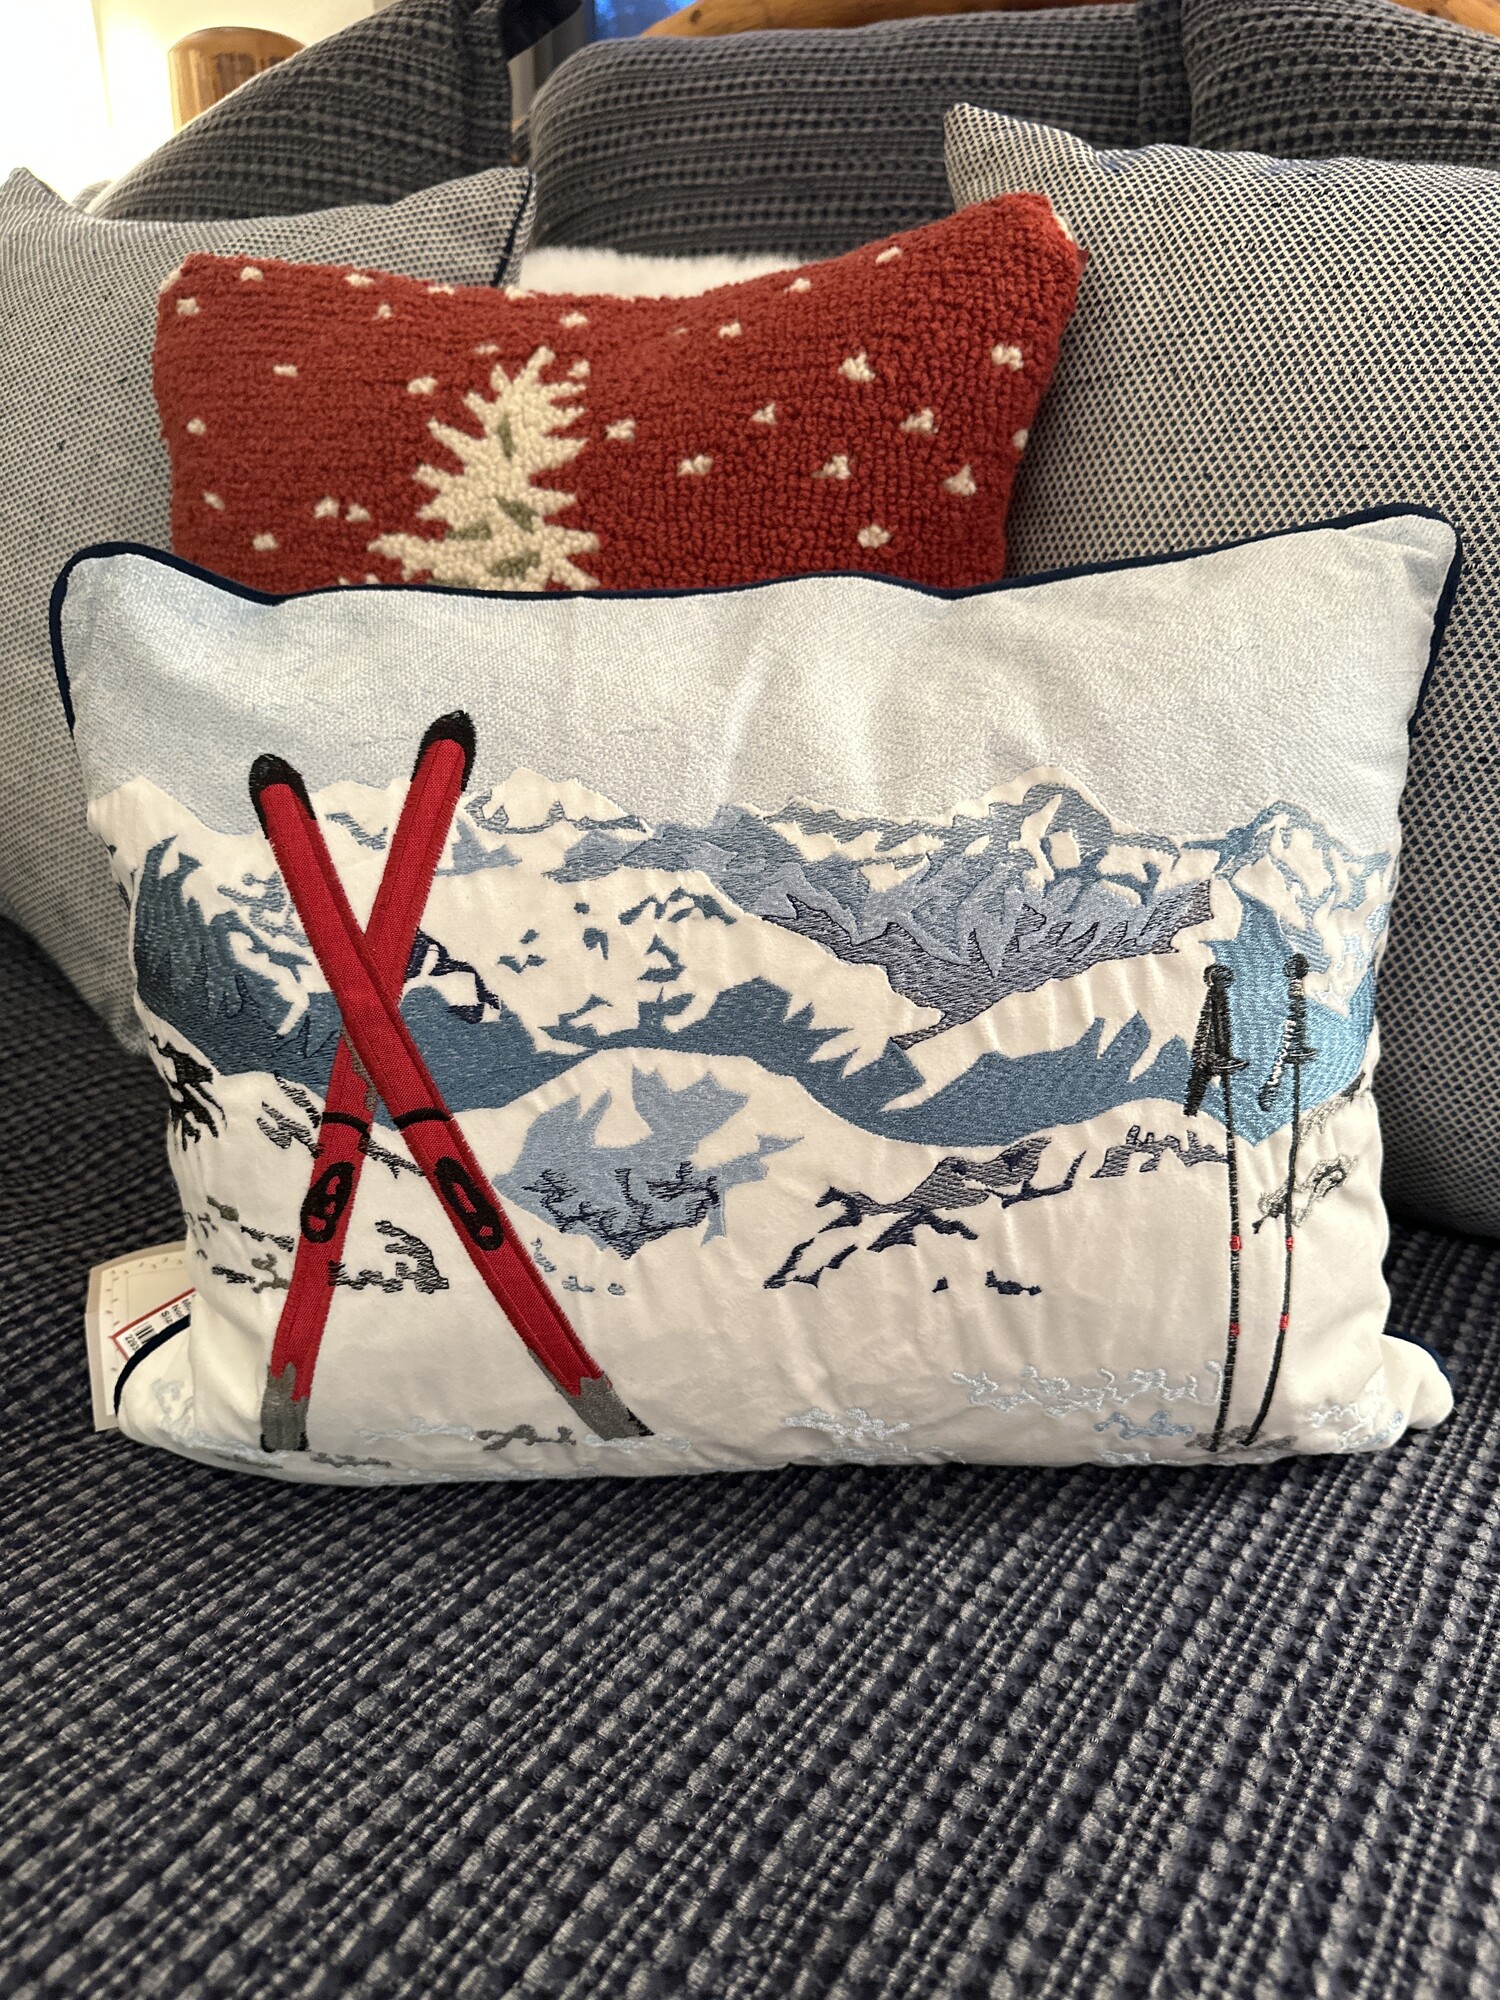 Mountain Ski Pillow

Size: 18Lx13W